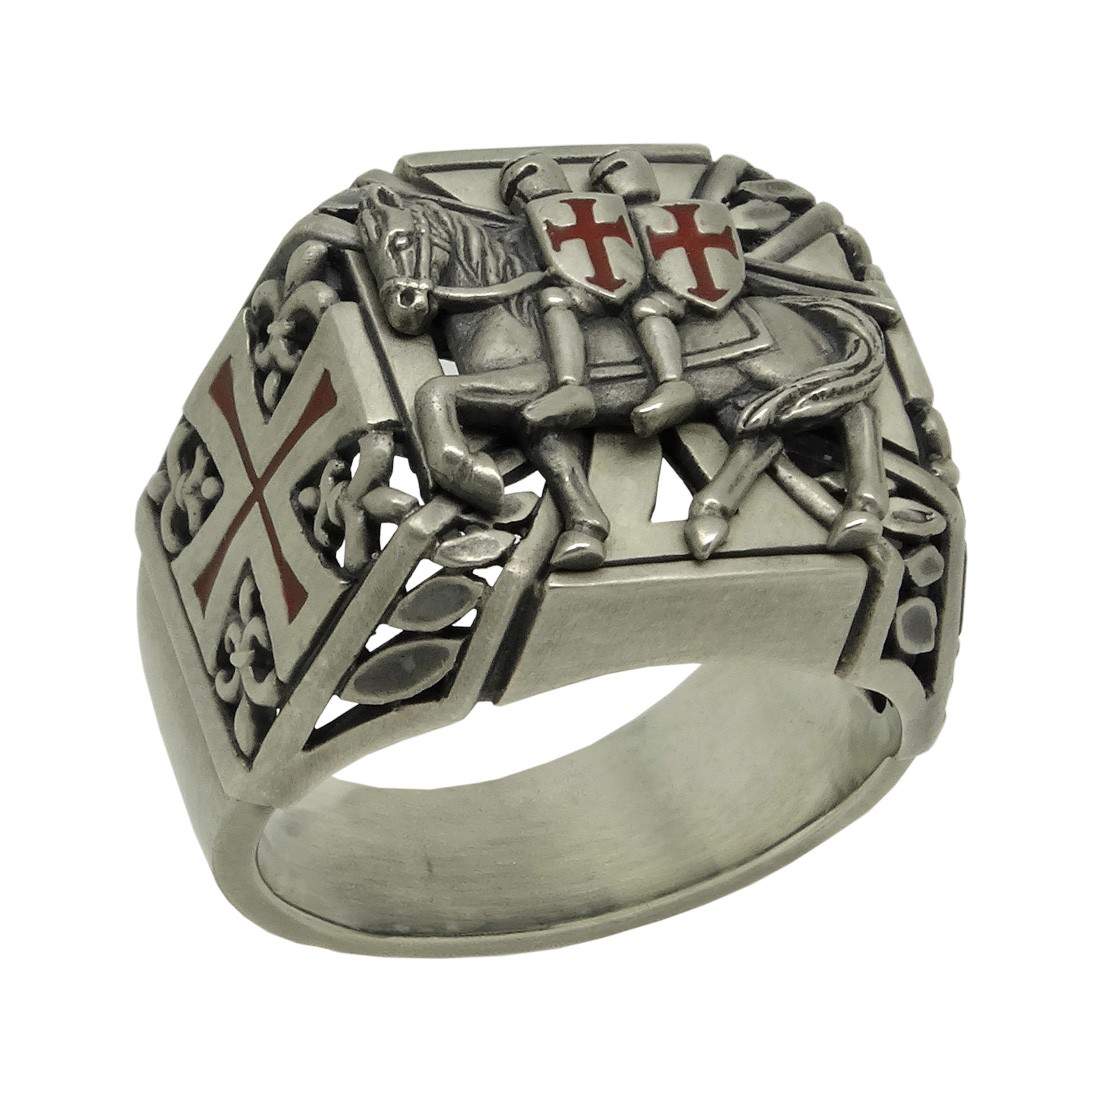 Knight Templar ring in solid 925 sterling silver gold plated seal anello sigillo dei Templari in argento 925